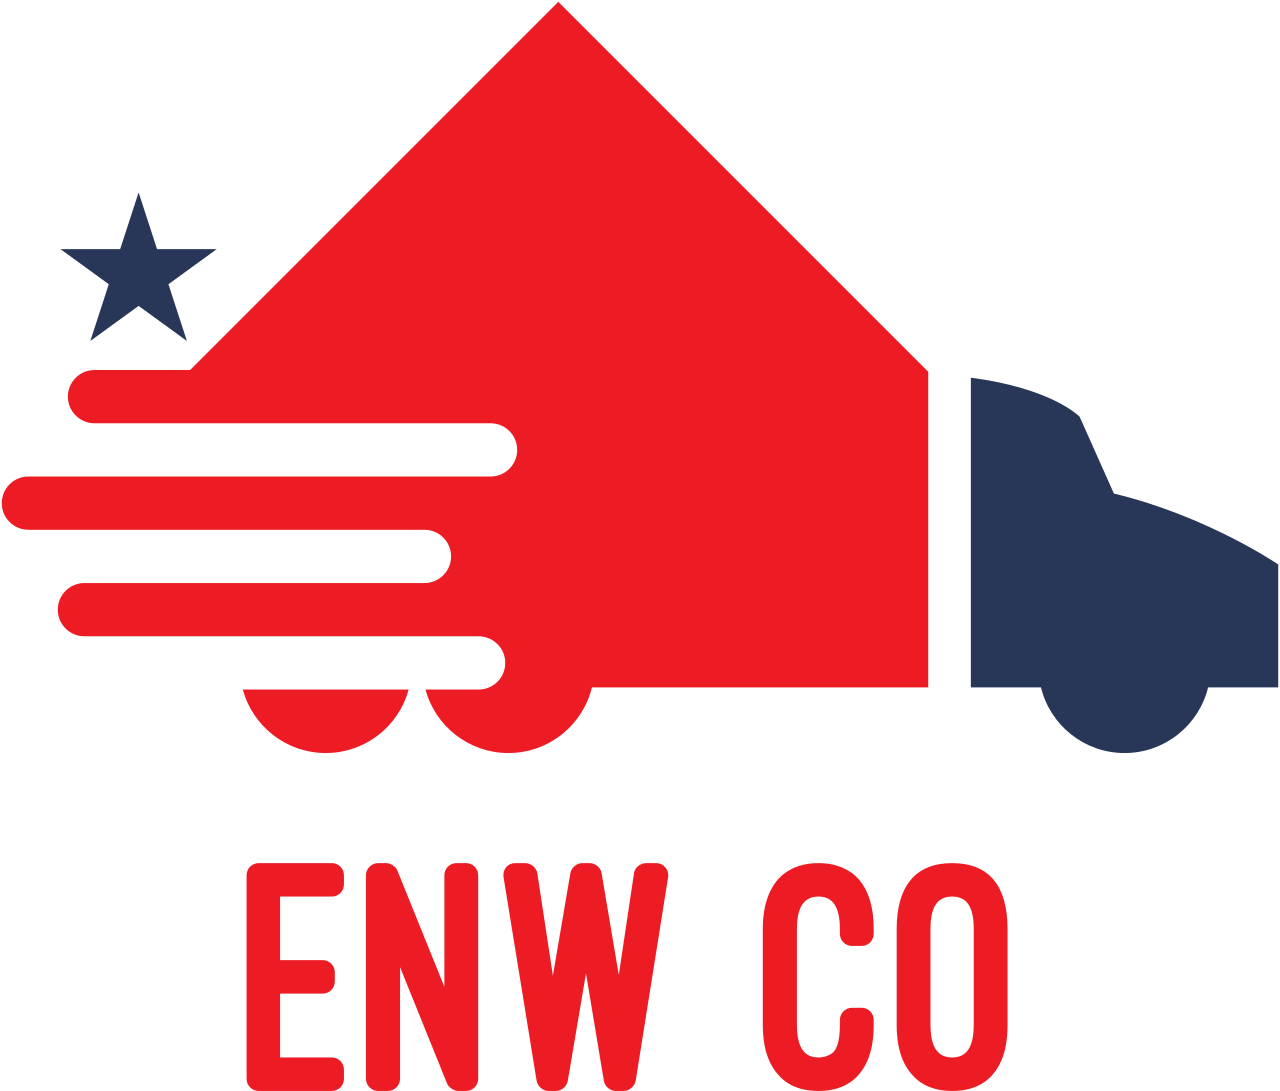 Enw Co's logo